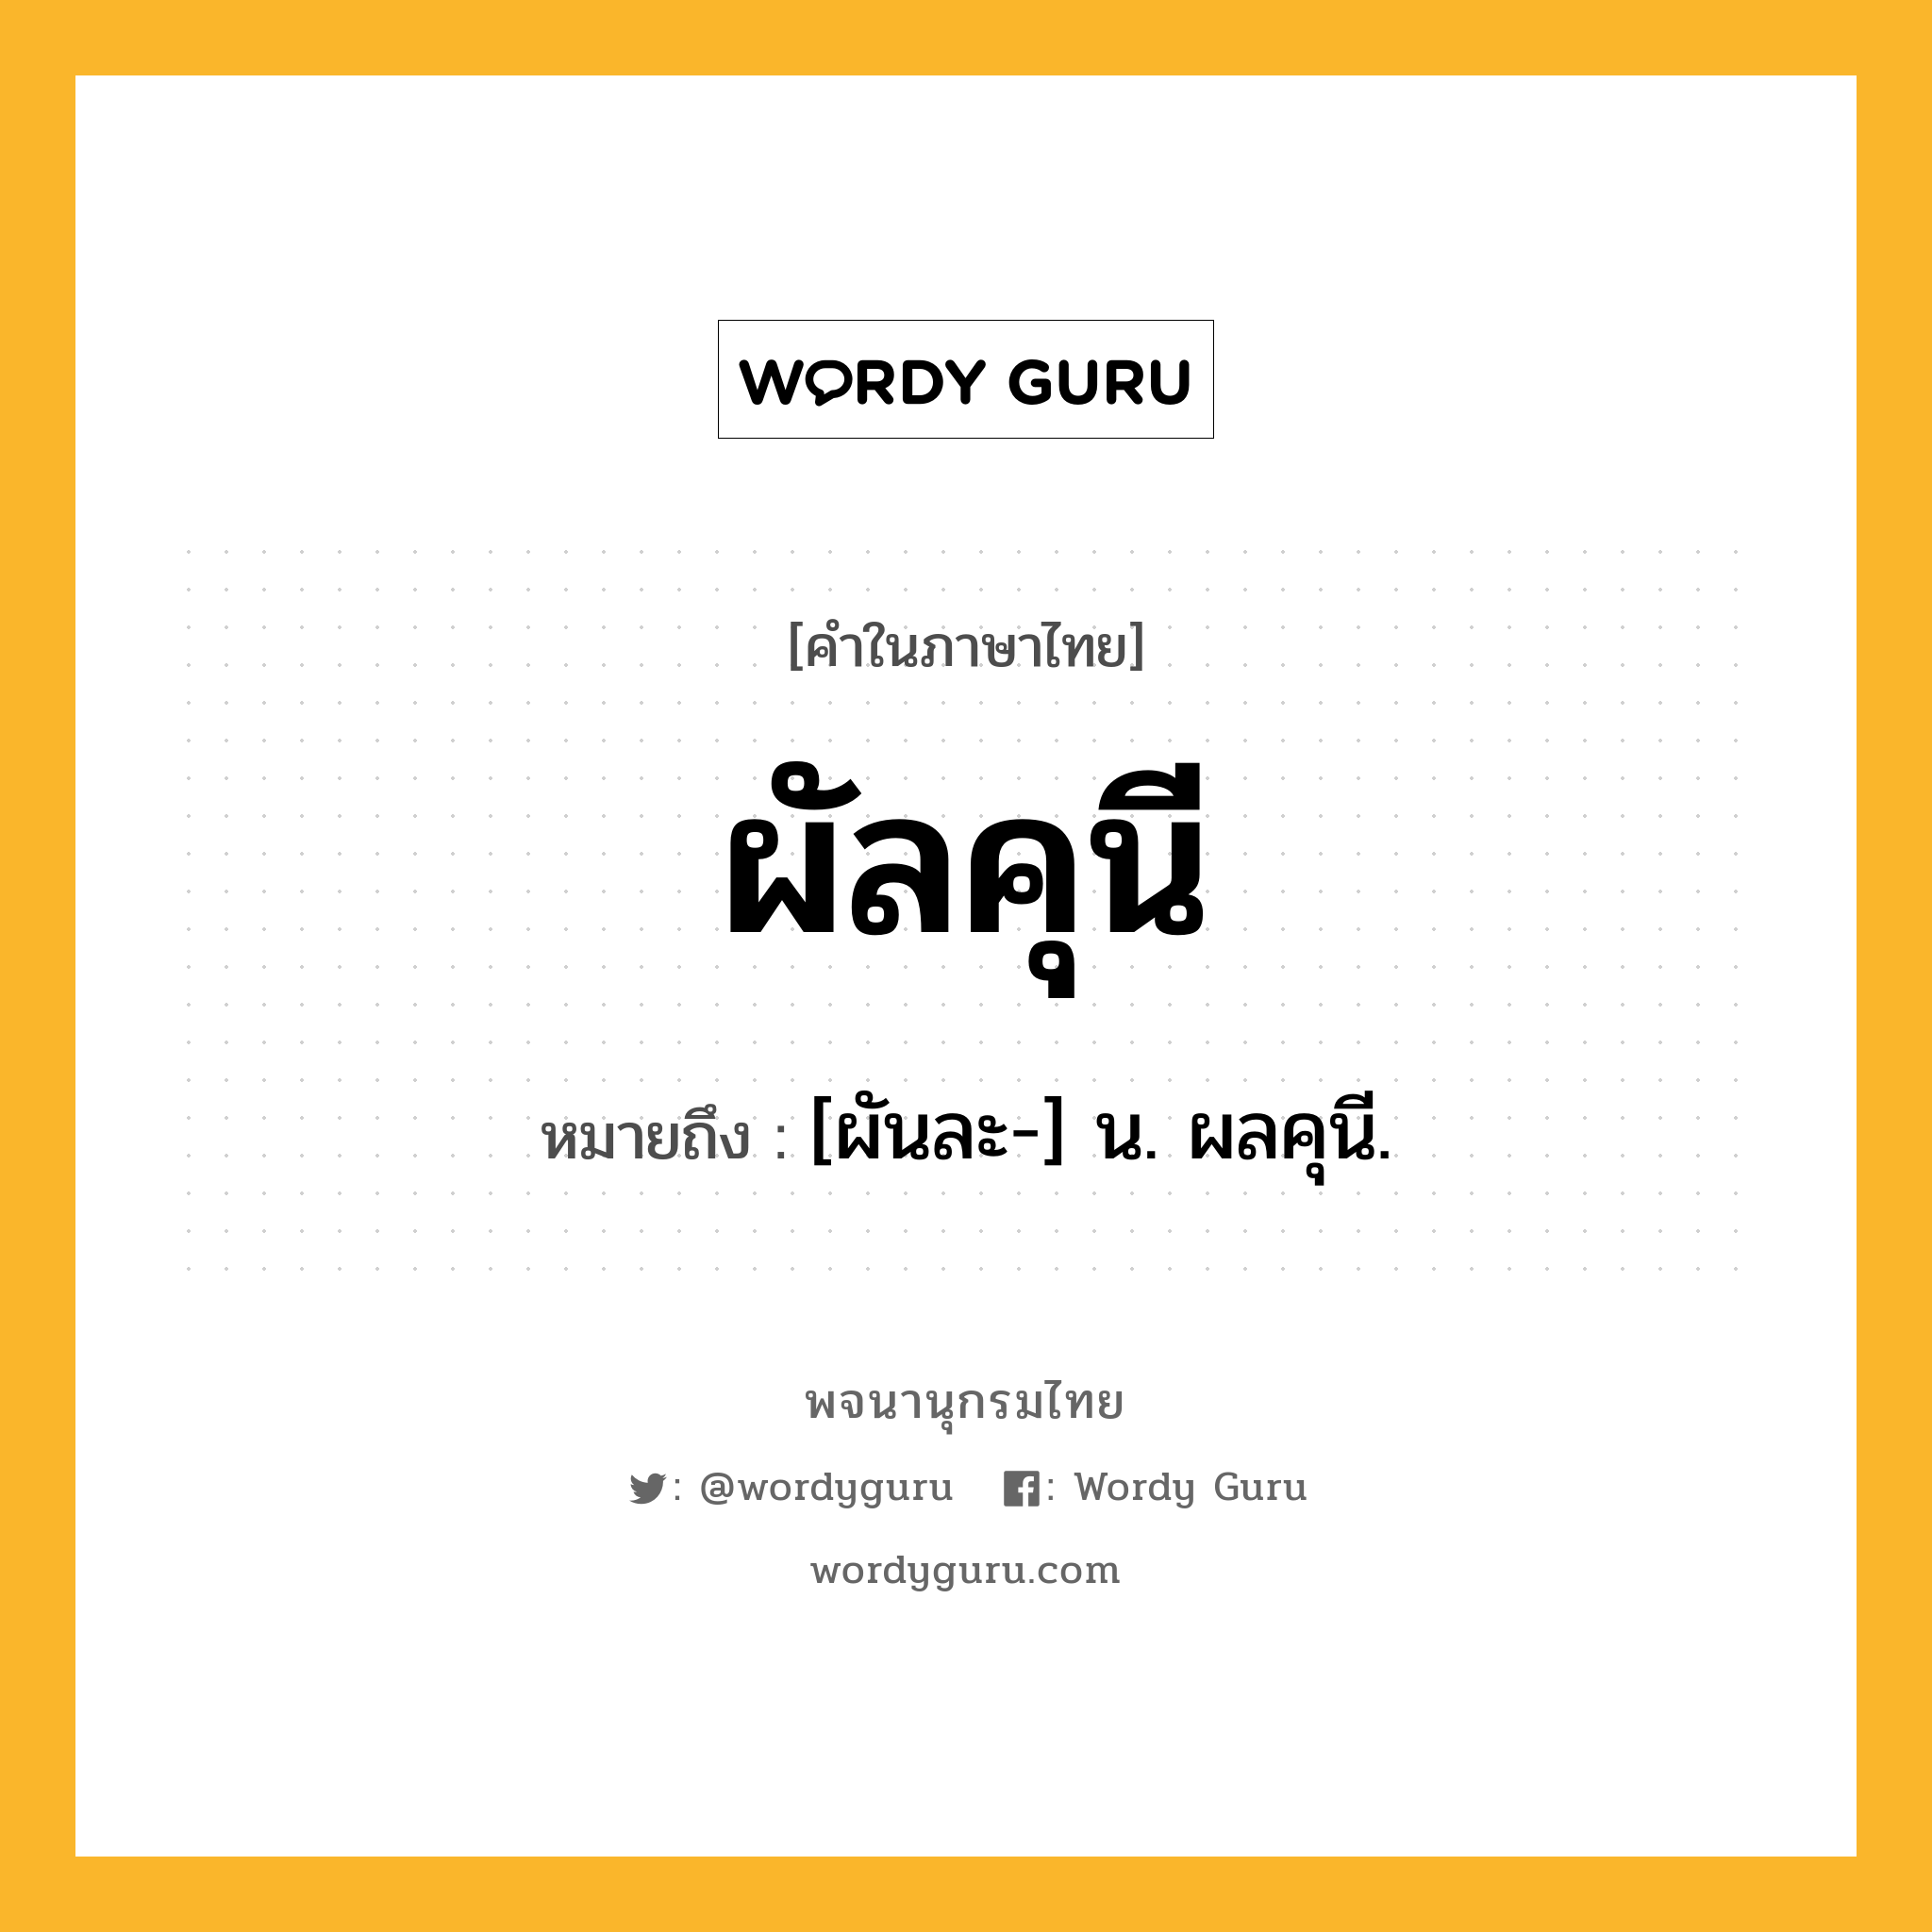 ผัลคุนี หมายถึงอะไร?, คำในภาษาไทย ผัลคุนี หมายถึง [ผันละ-] น. ผลคุนี.